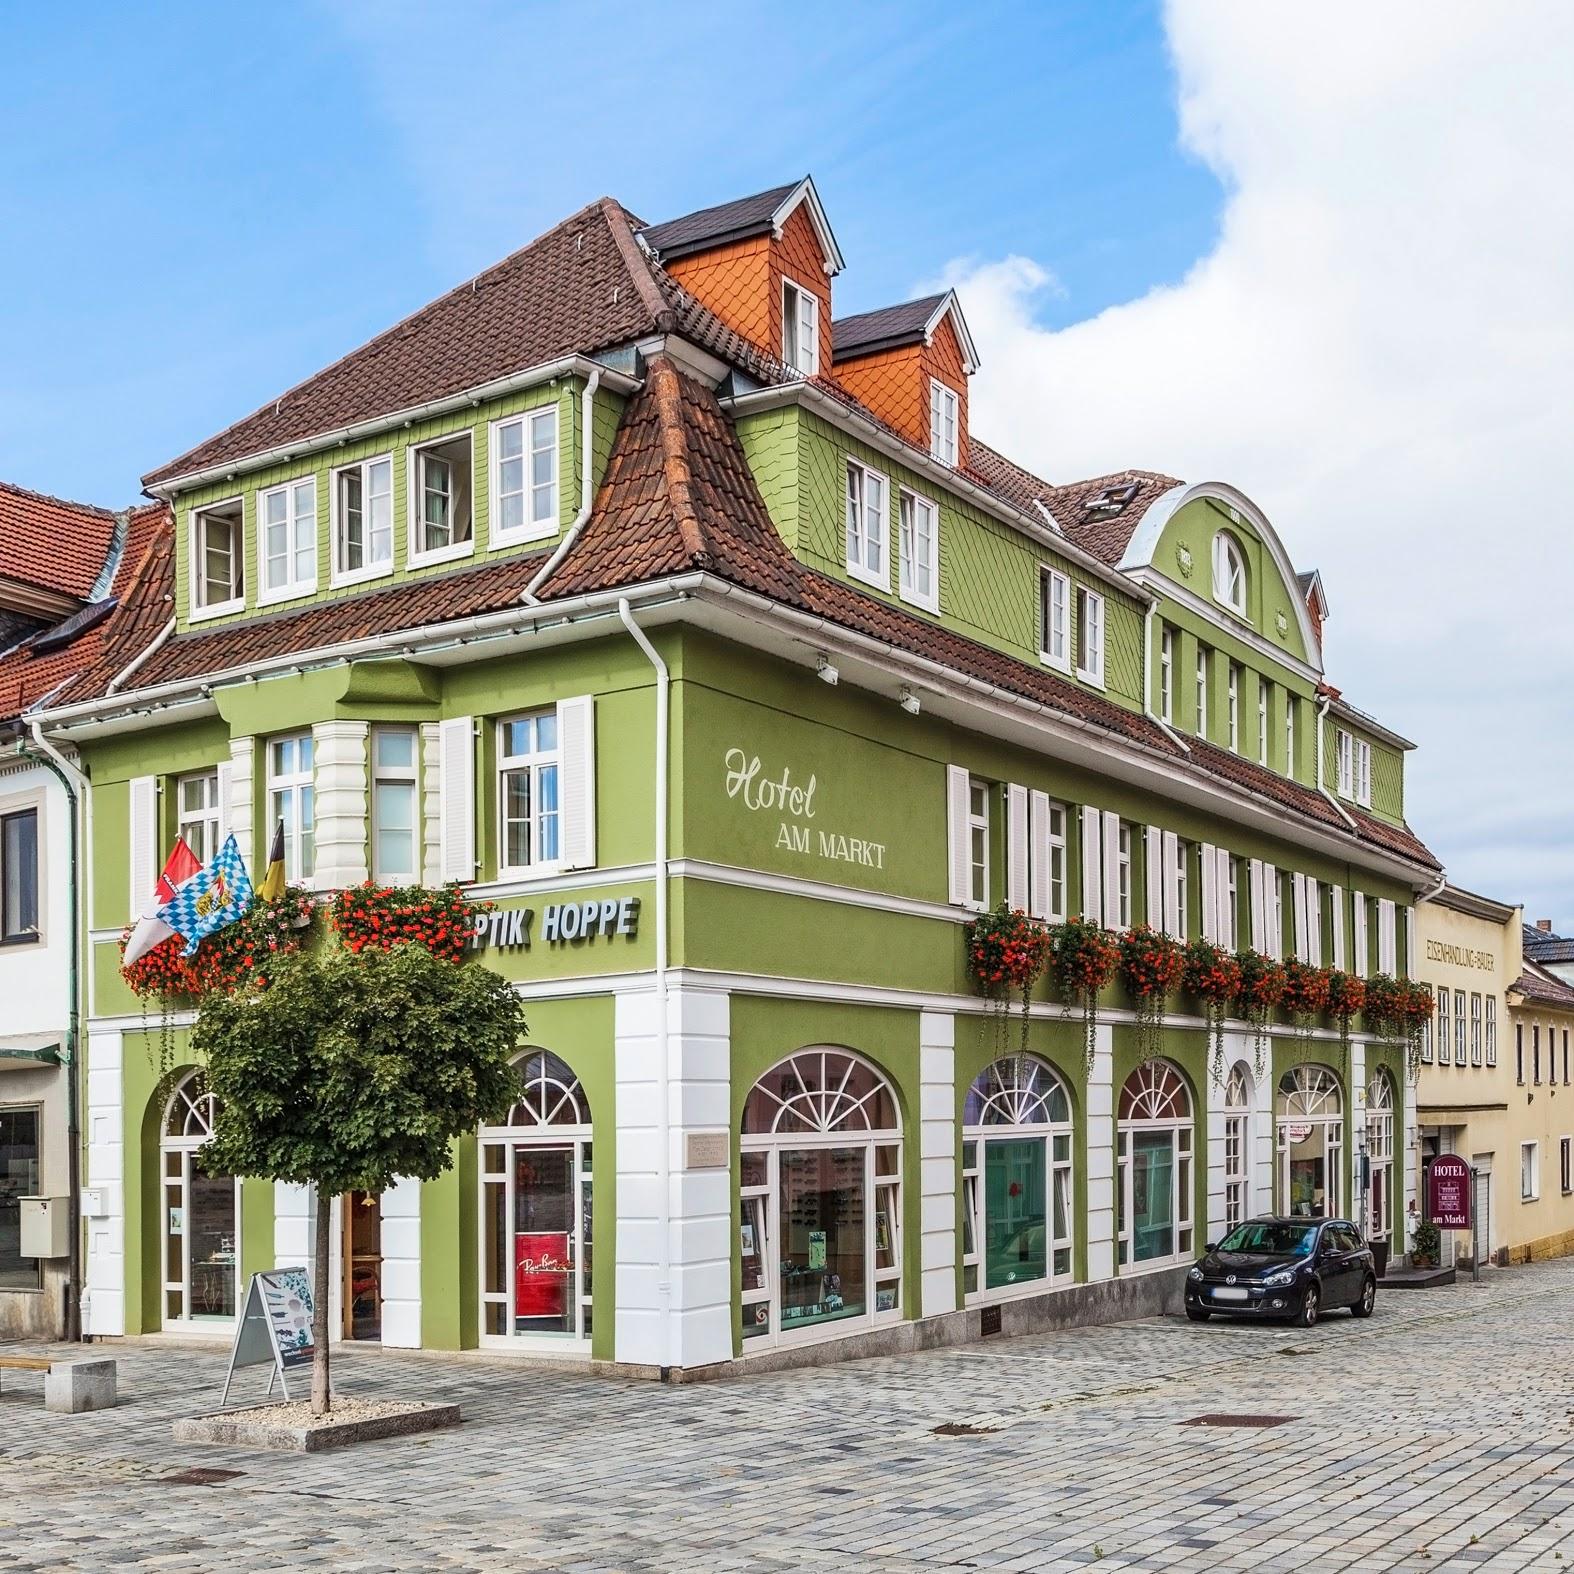 Restaurant "Hotel Garni am Markt" in Neustadt bei Coburg